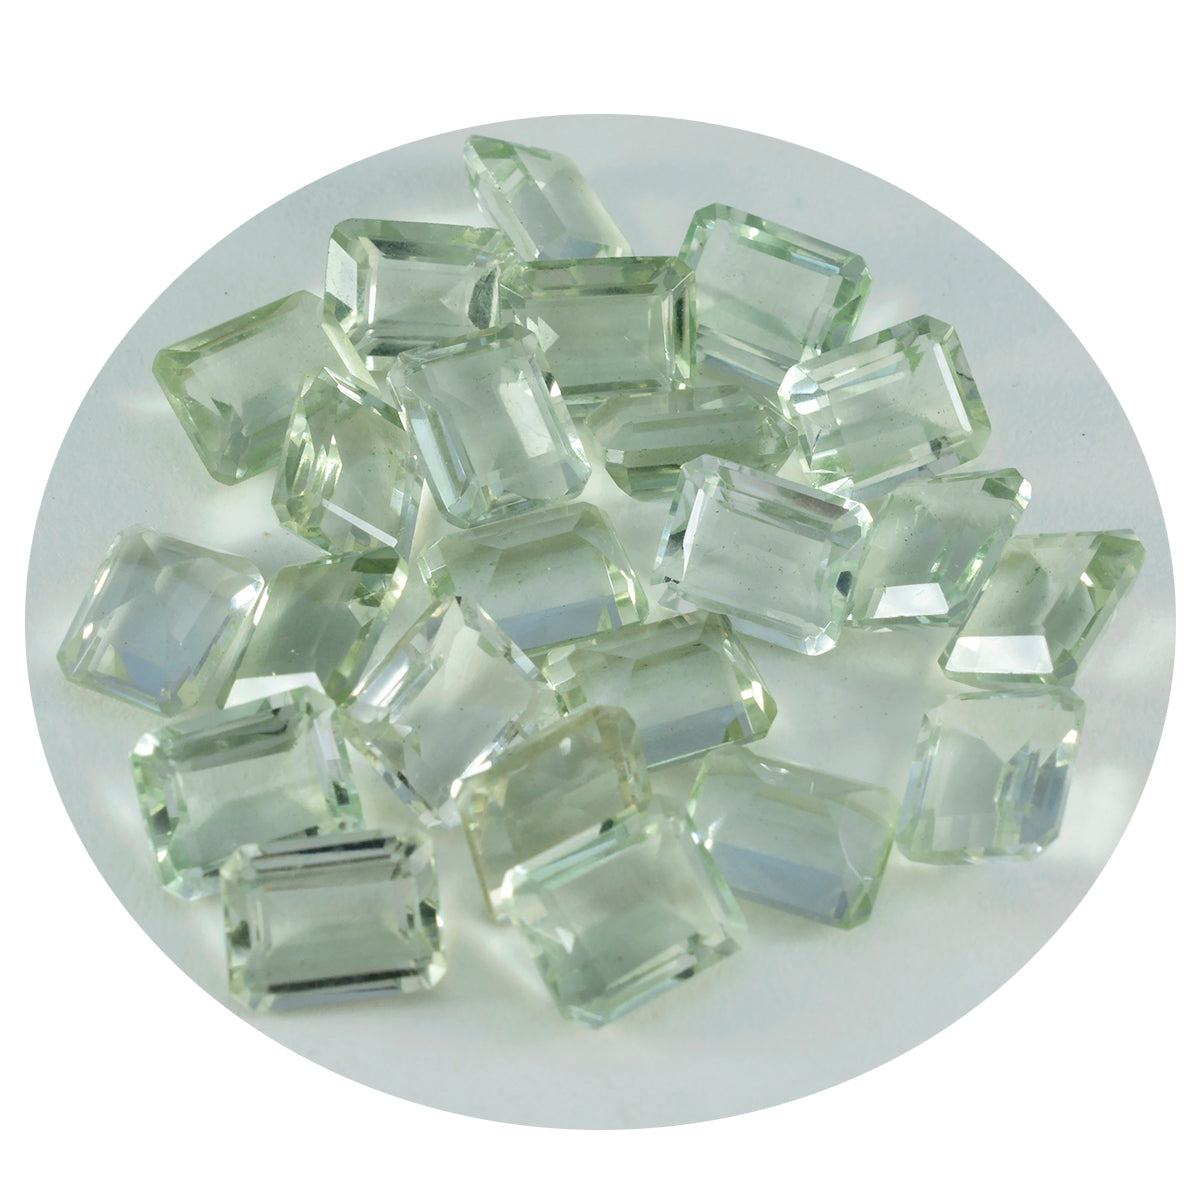 riyogems 1 шт. зеленый аметист ограненный 6x8 мм восьмиугольной формы, россыпной драгоценный камень потрясающего качества